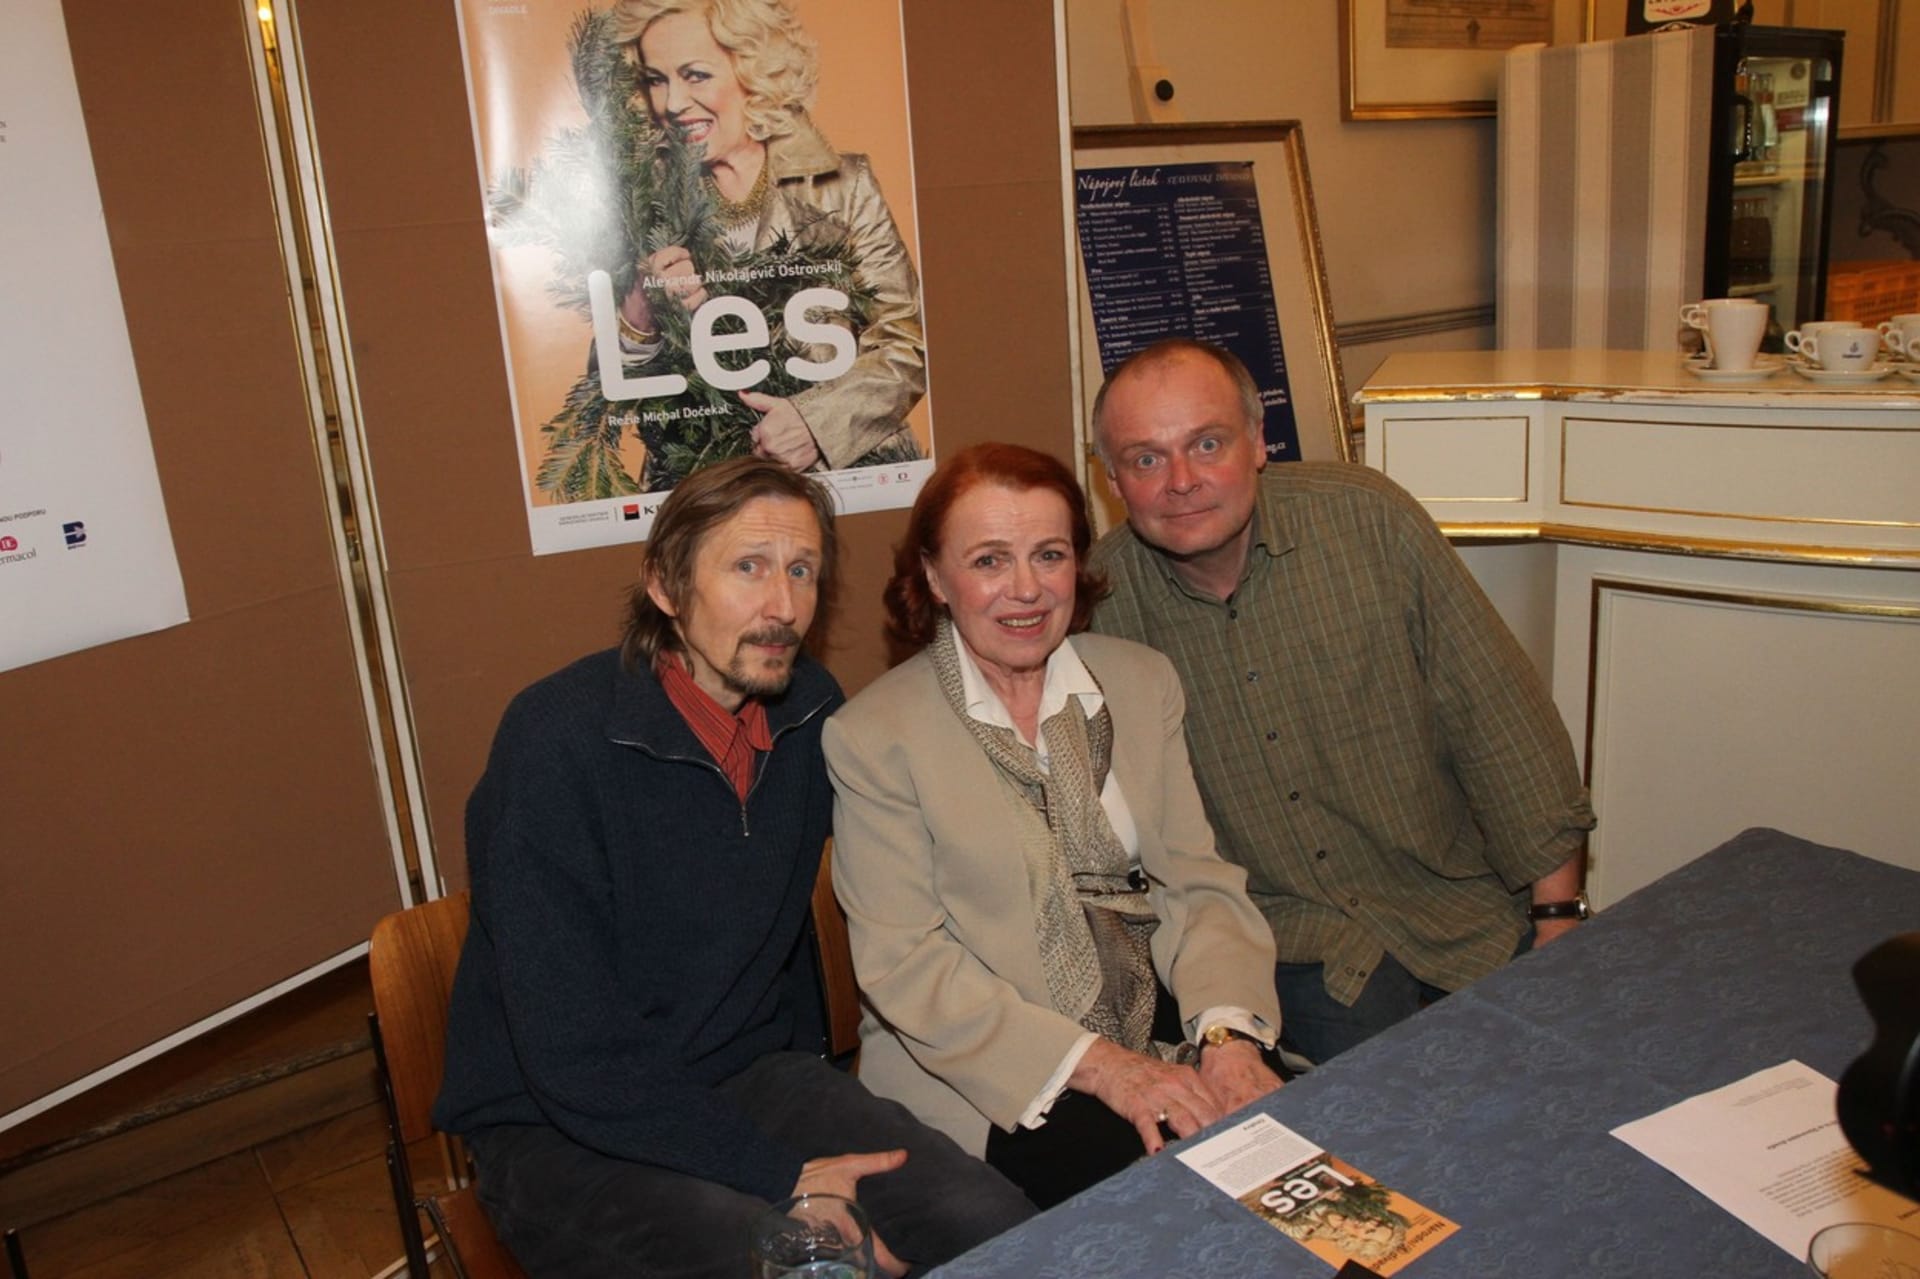 Igor Bareš s hereckými kolegy Ivou Janžurovou a Vladimírem Javorským před deseti lety ve Stavovském divadle u příležitosti premiéry hry Les.